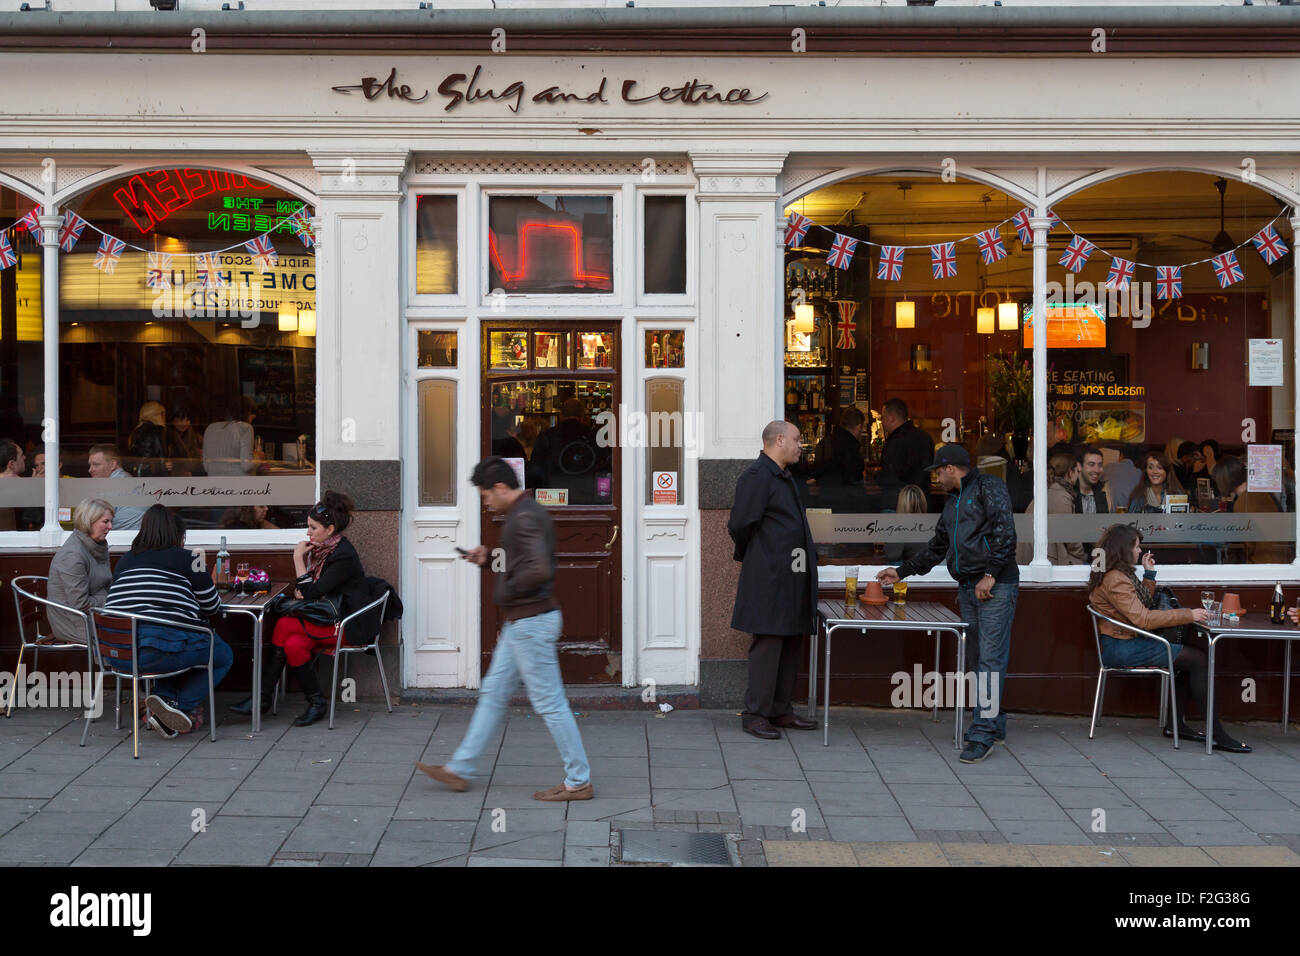 04.06.2012, London, größere London, Vereinigtes Königreich - The Pub The Slug und Salat auf Upper Street im Stadtteil Islington. Stockfoto